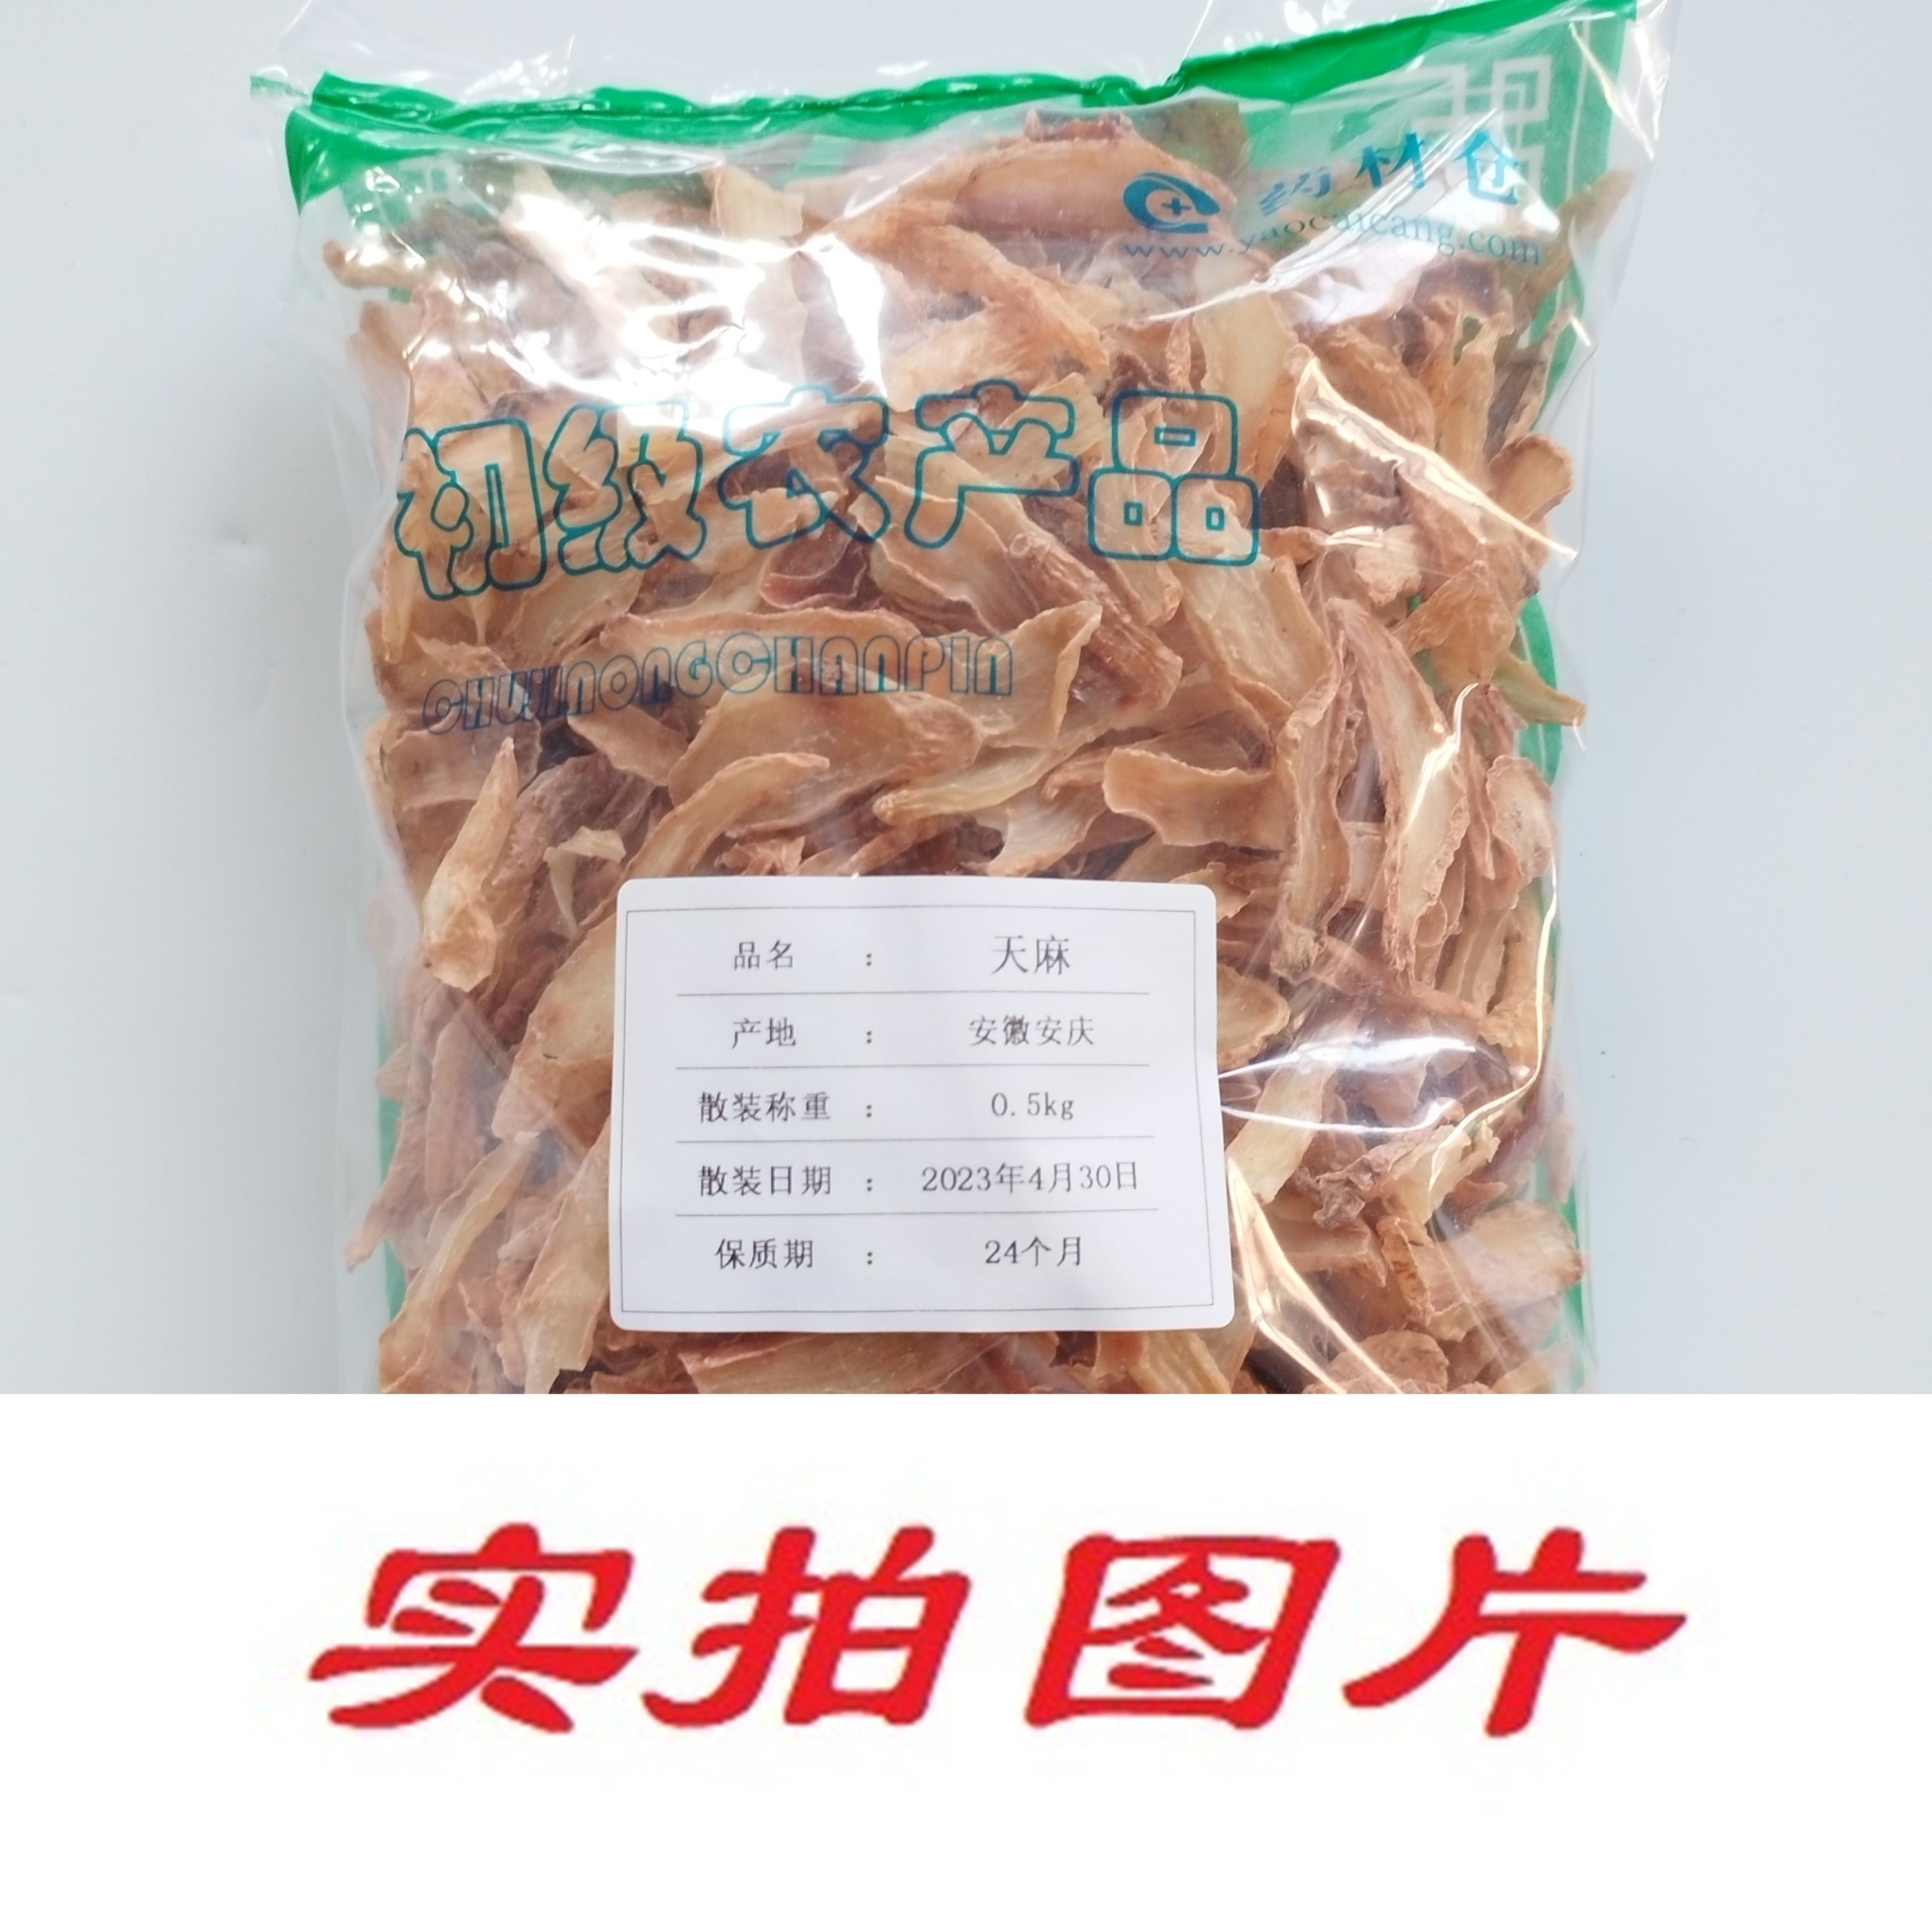 【】天麻0.5kg-农副产品